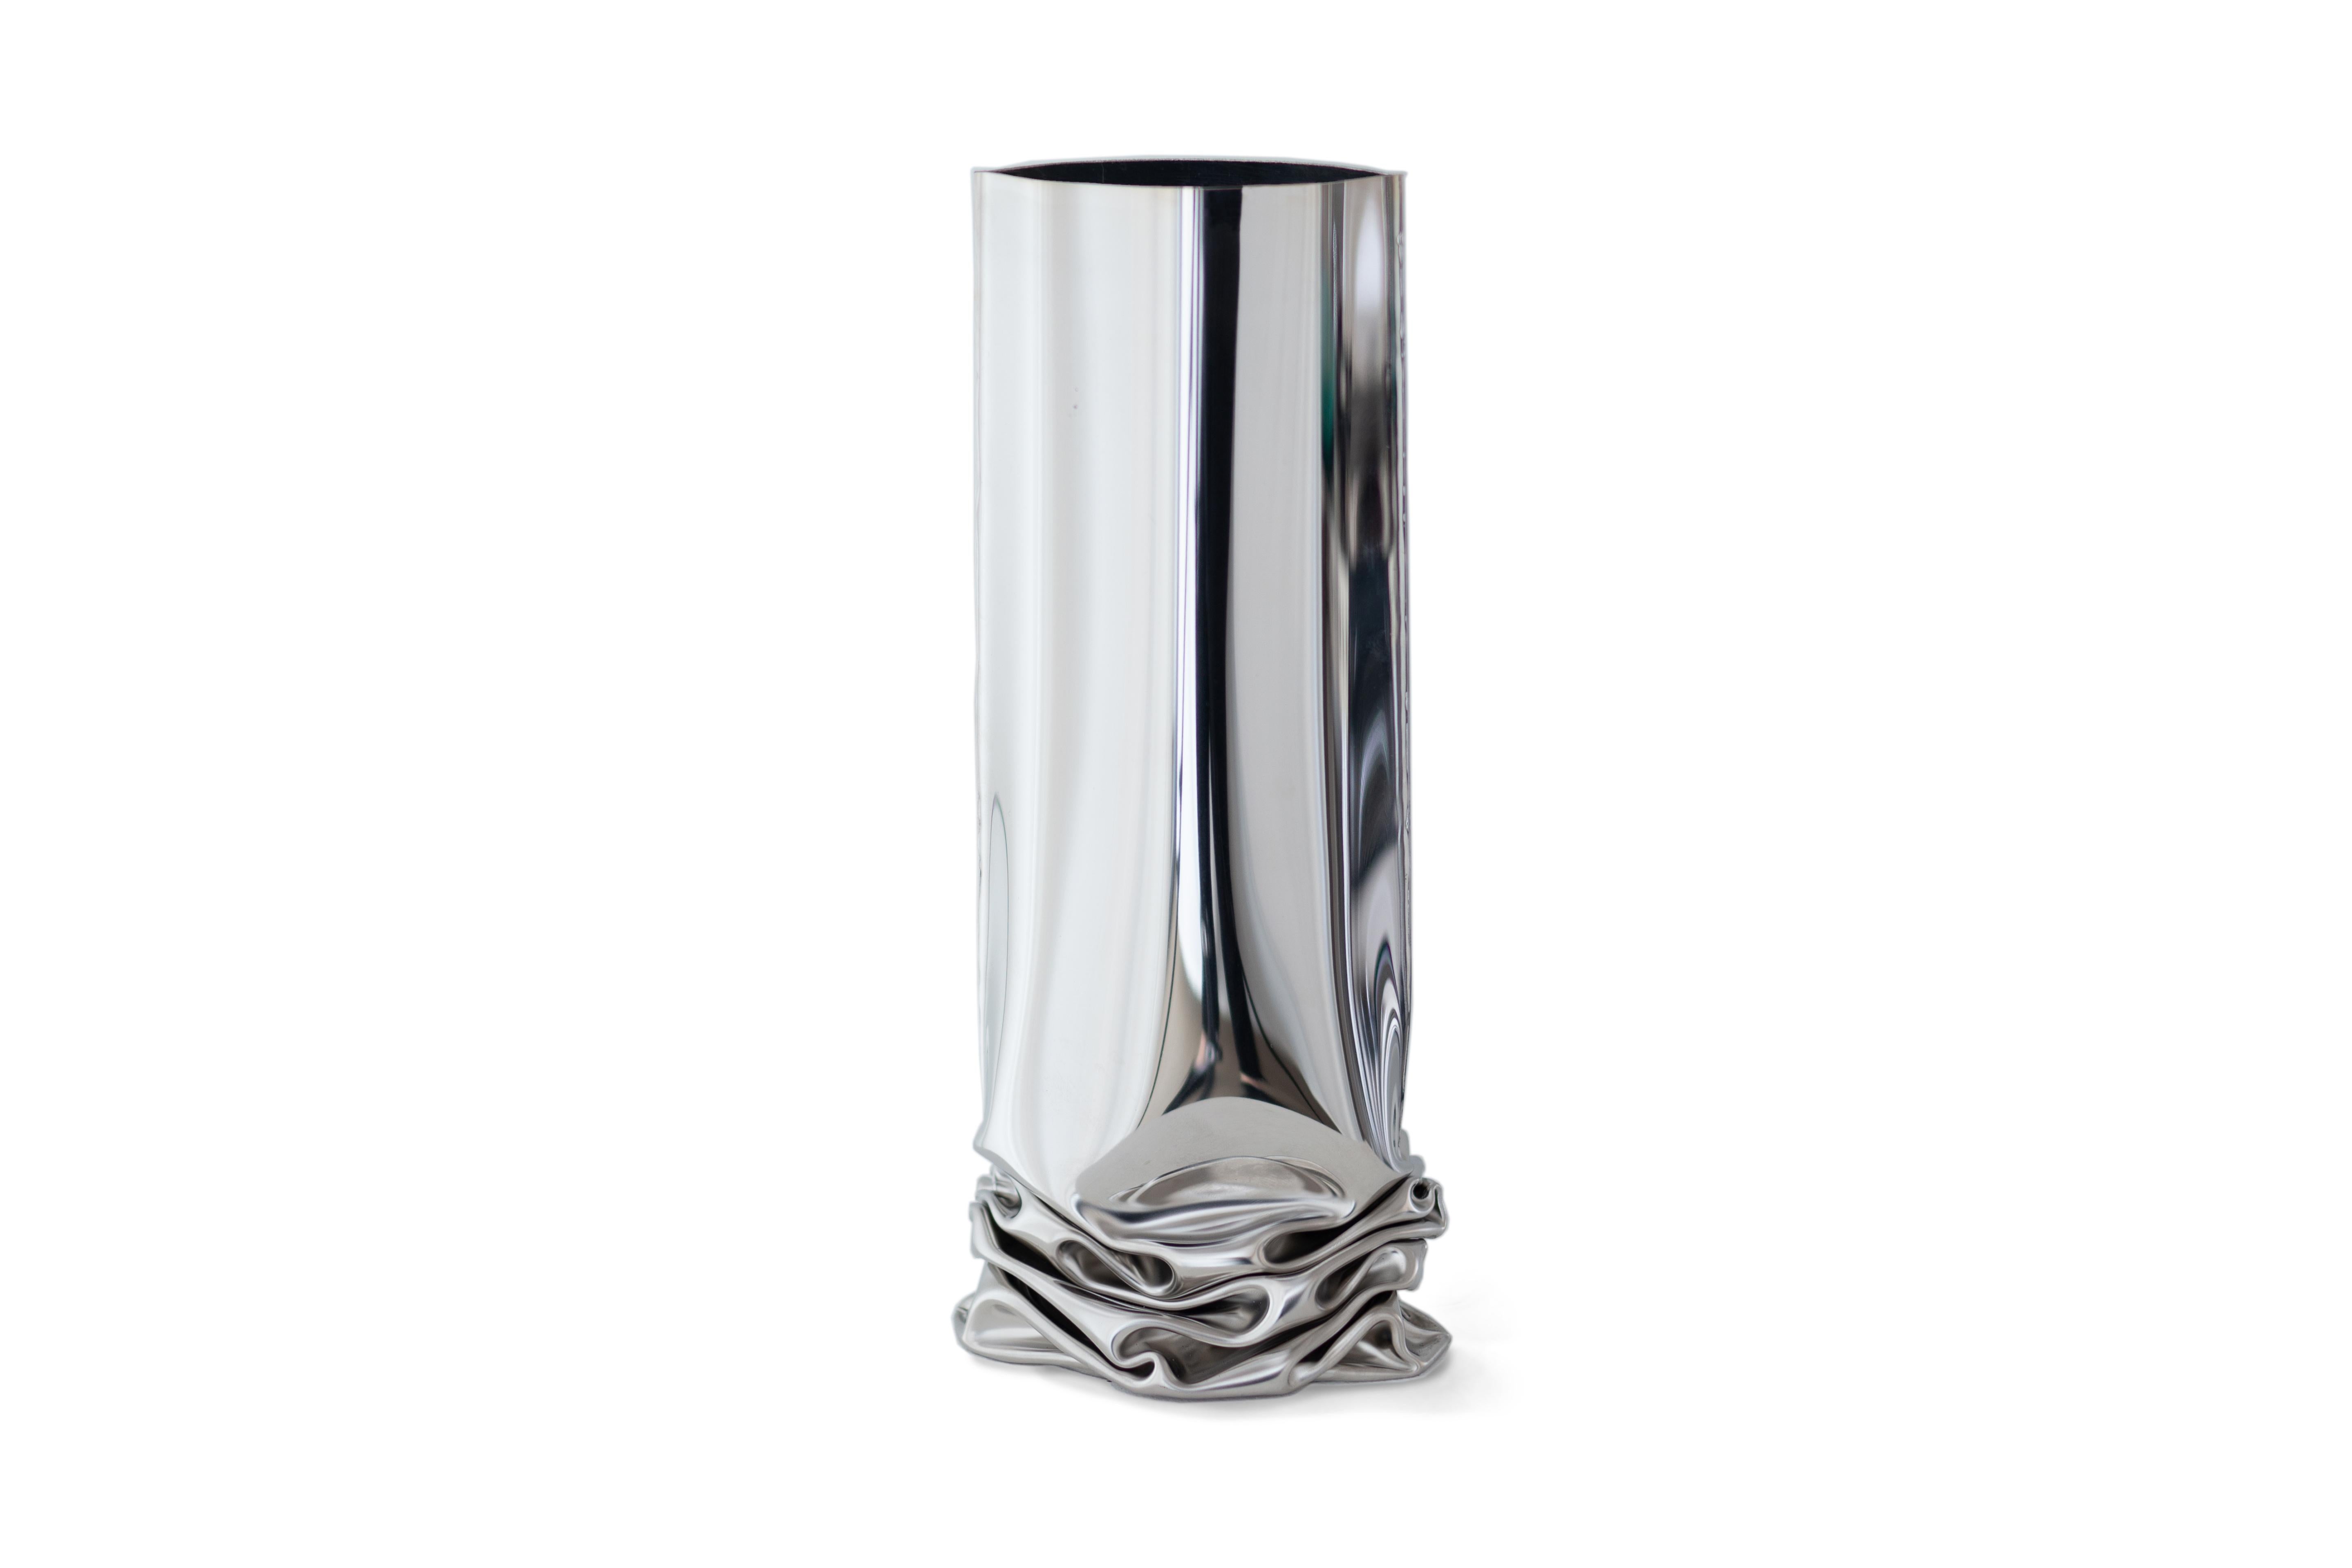 Crash-Vase 1 von Zieta
Abmessungen: H 30 x B 13,5 x T 20 cm.
MATERIAL: polierter Edelstahl.

Unauffällige Verformung Crash Vases spiegeln die Technik des 